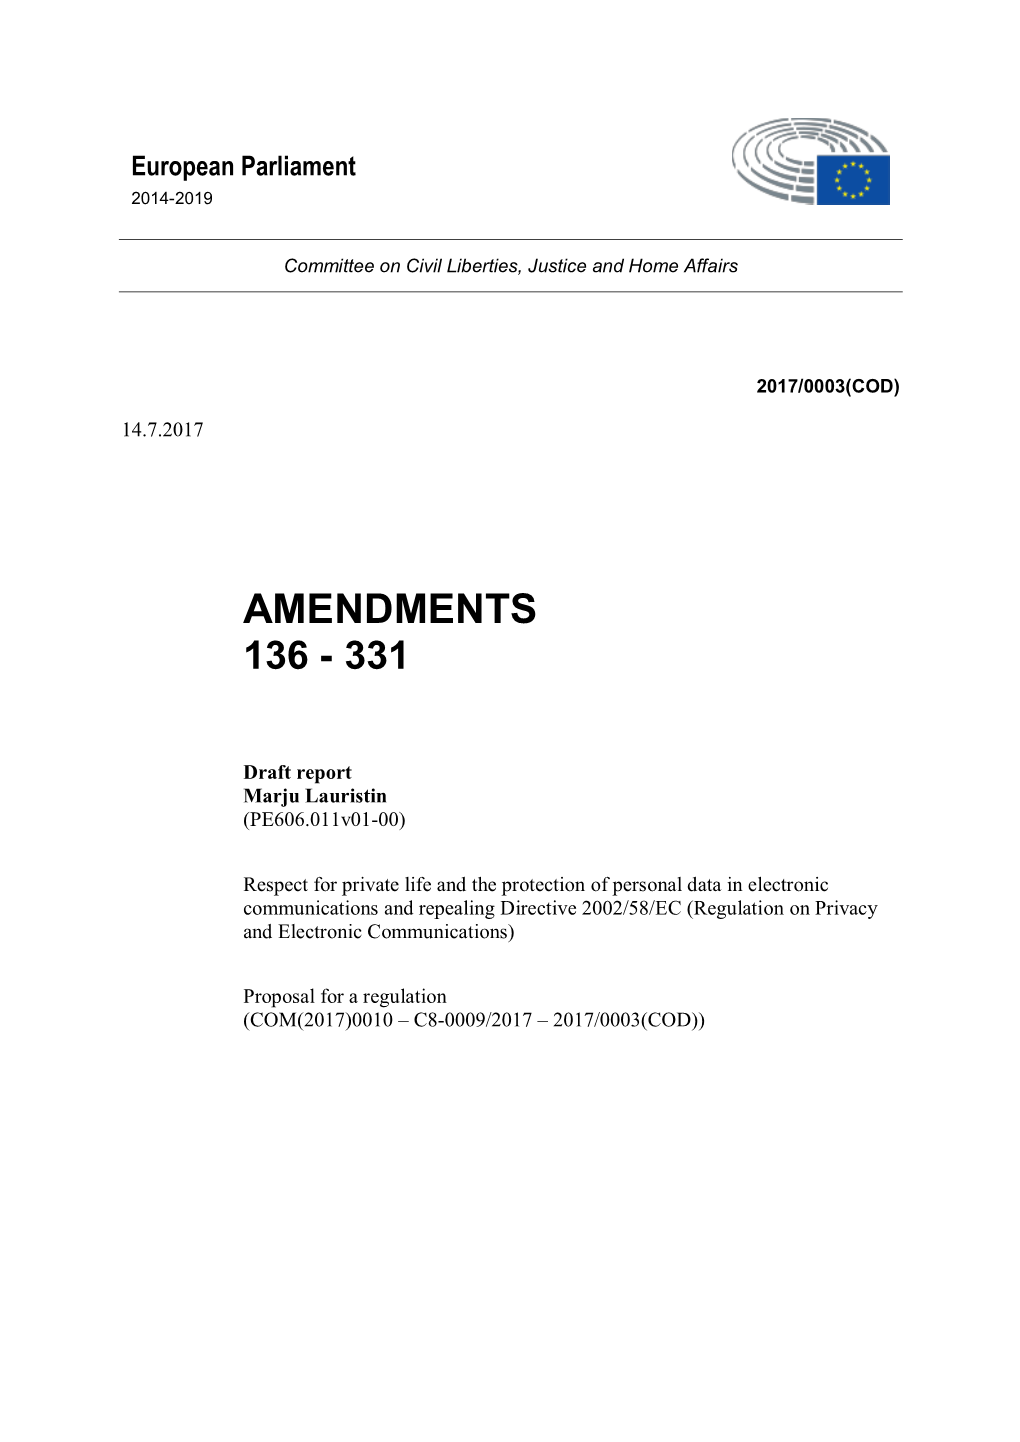 Amendments 136 - 331